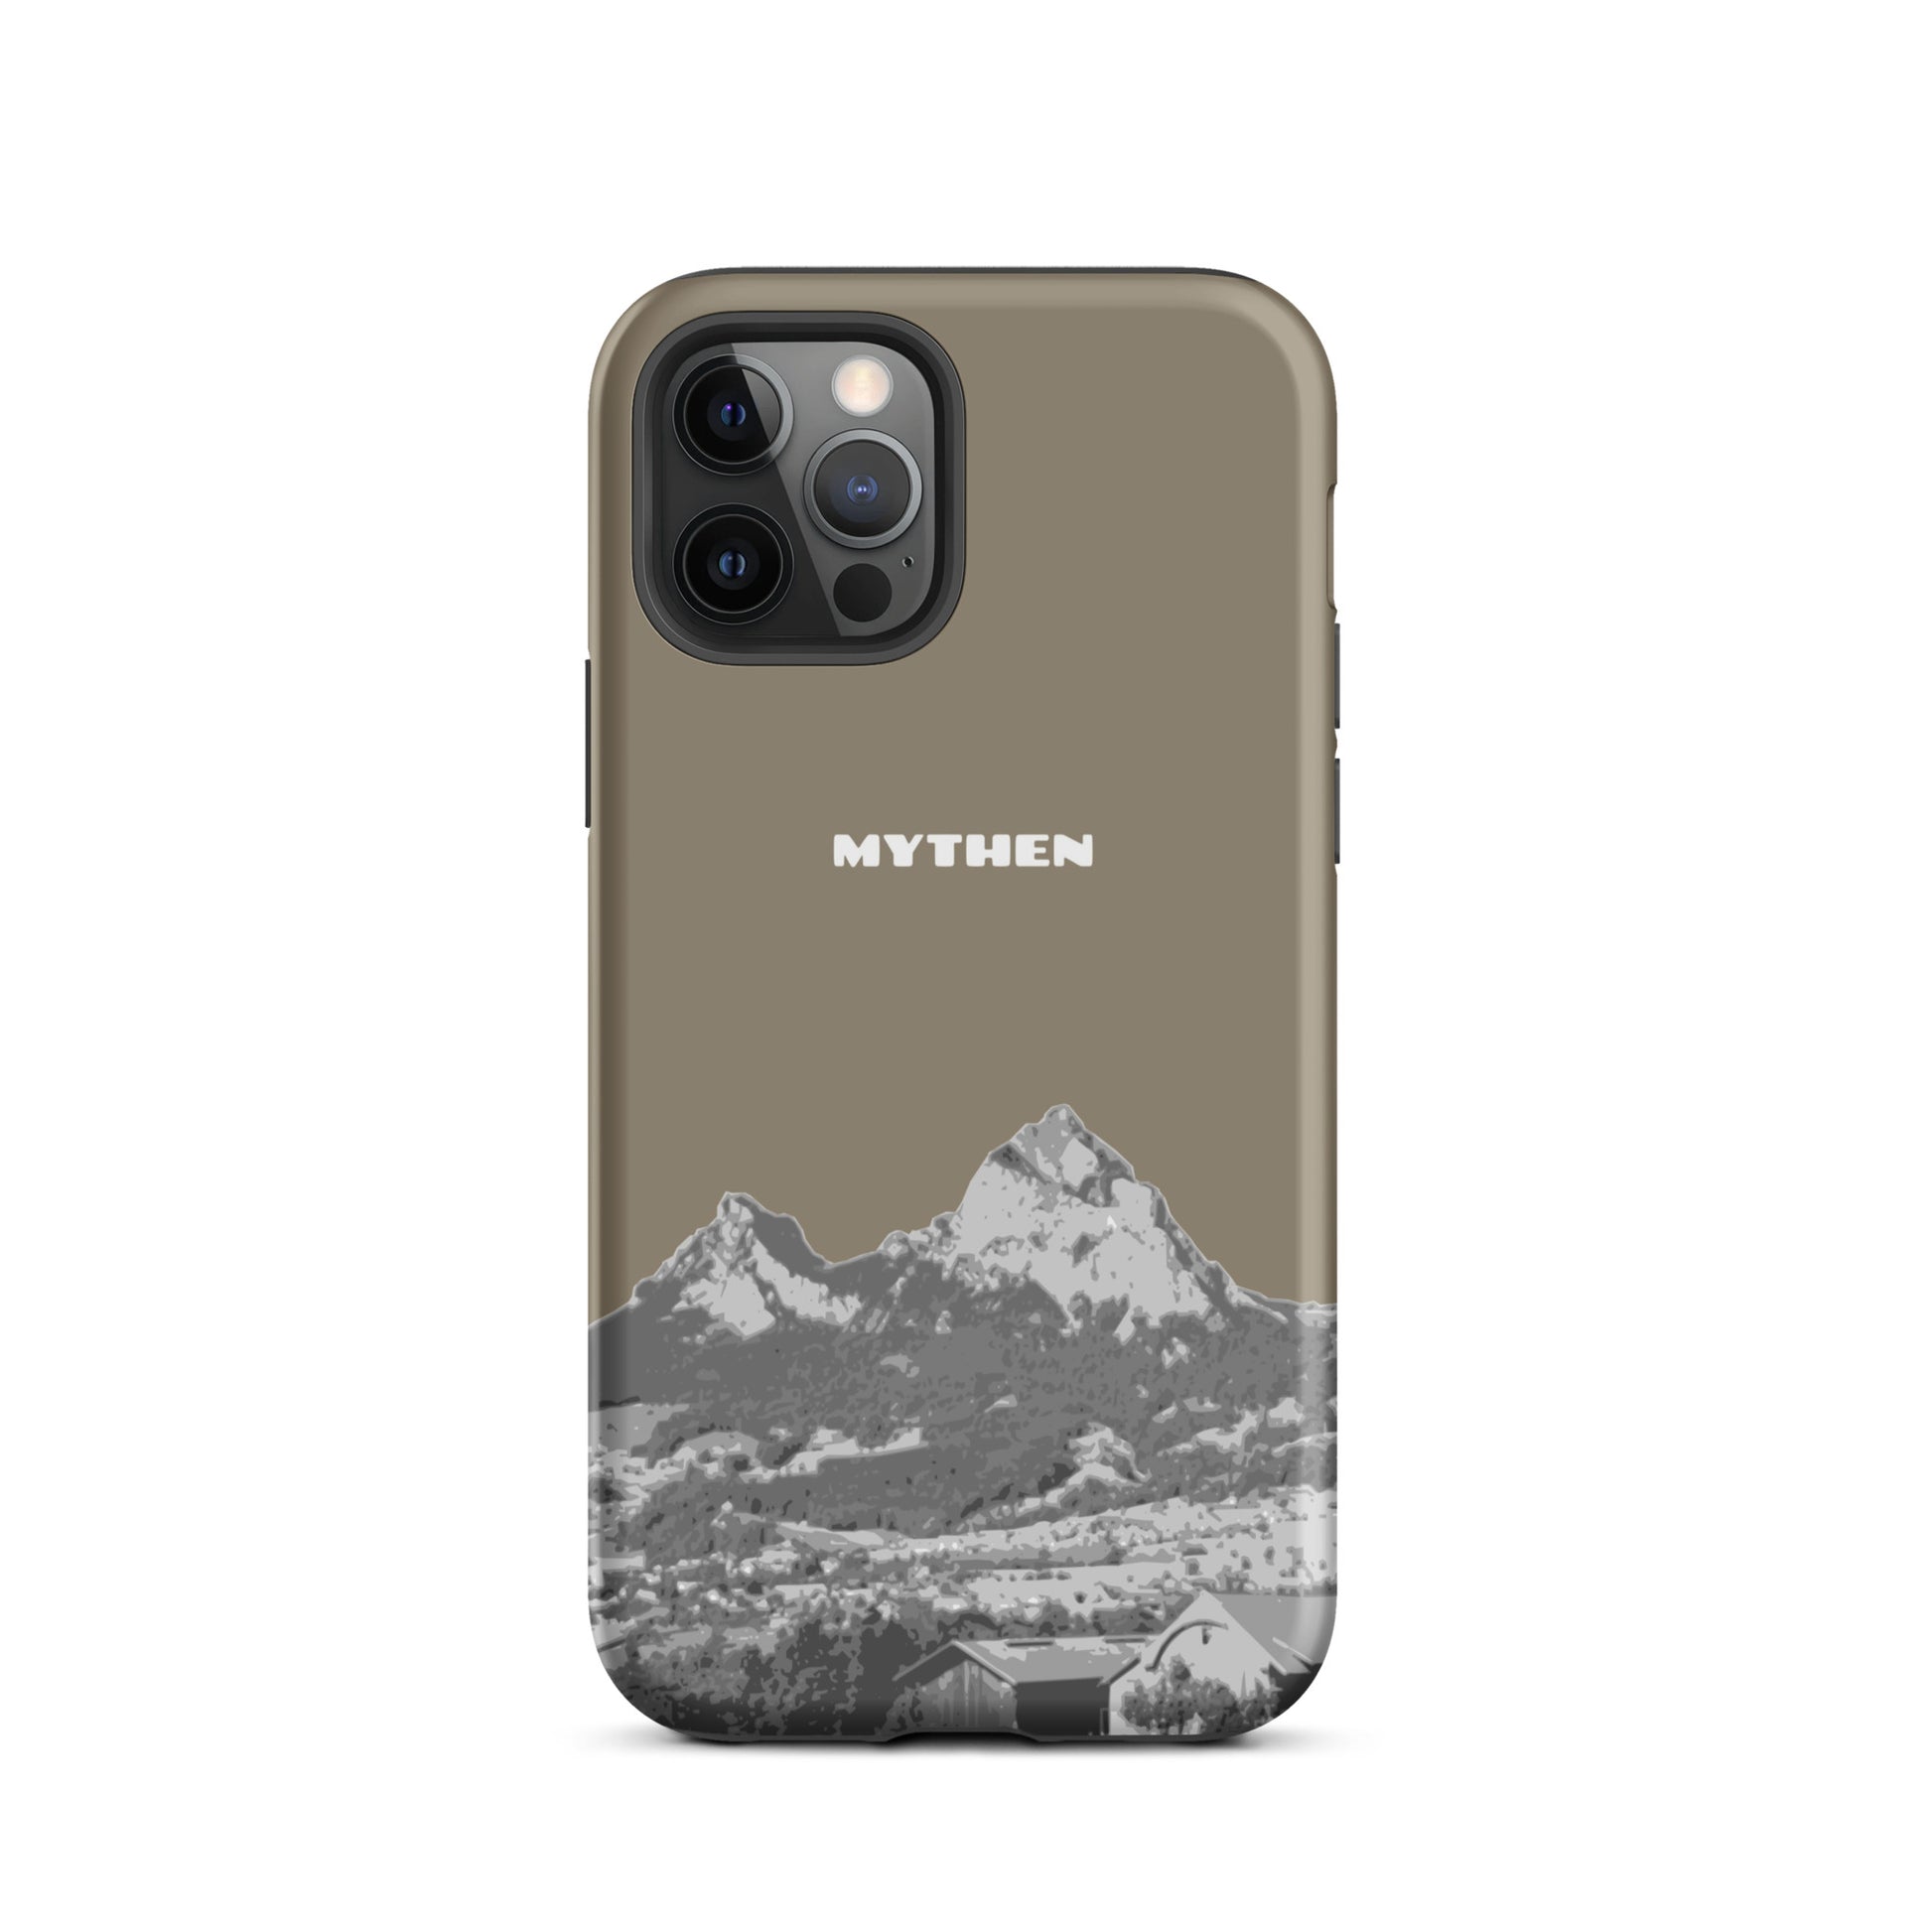 Hülle für das iPhone 12 Pro von Apple in der Farbe Graubraun, dass den Grossen Mythen und den Kleinen Mythen bei Schwyz zeigt. 